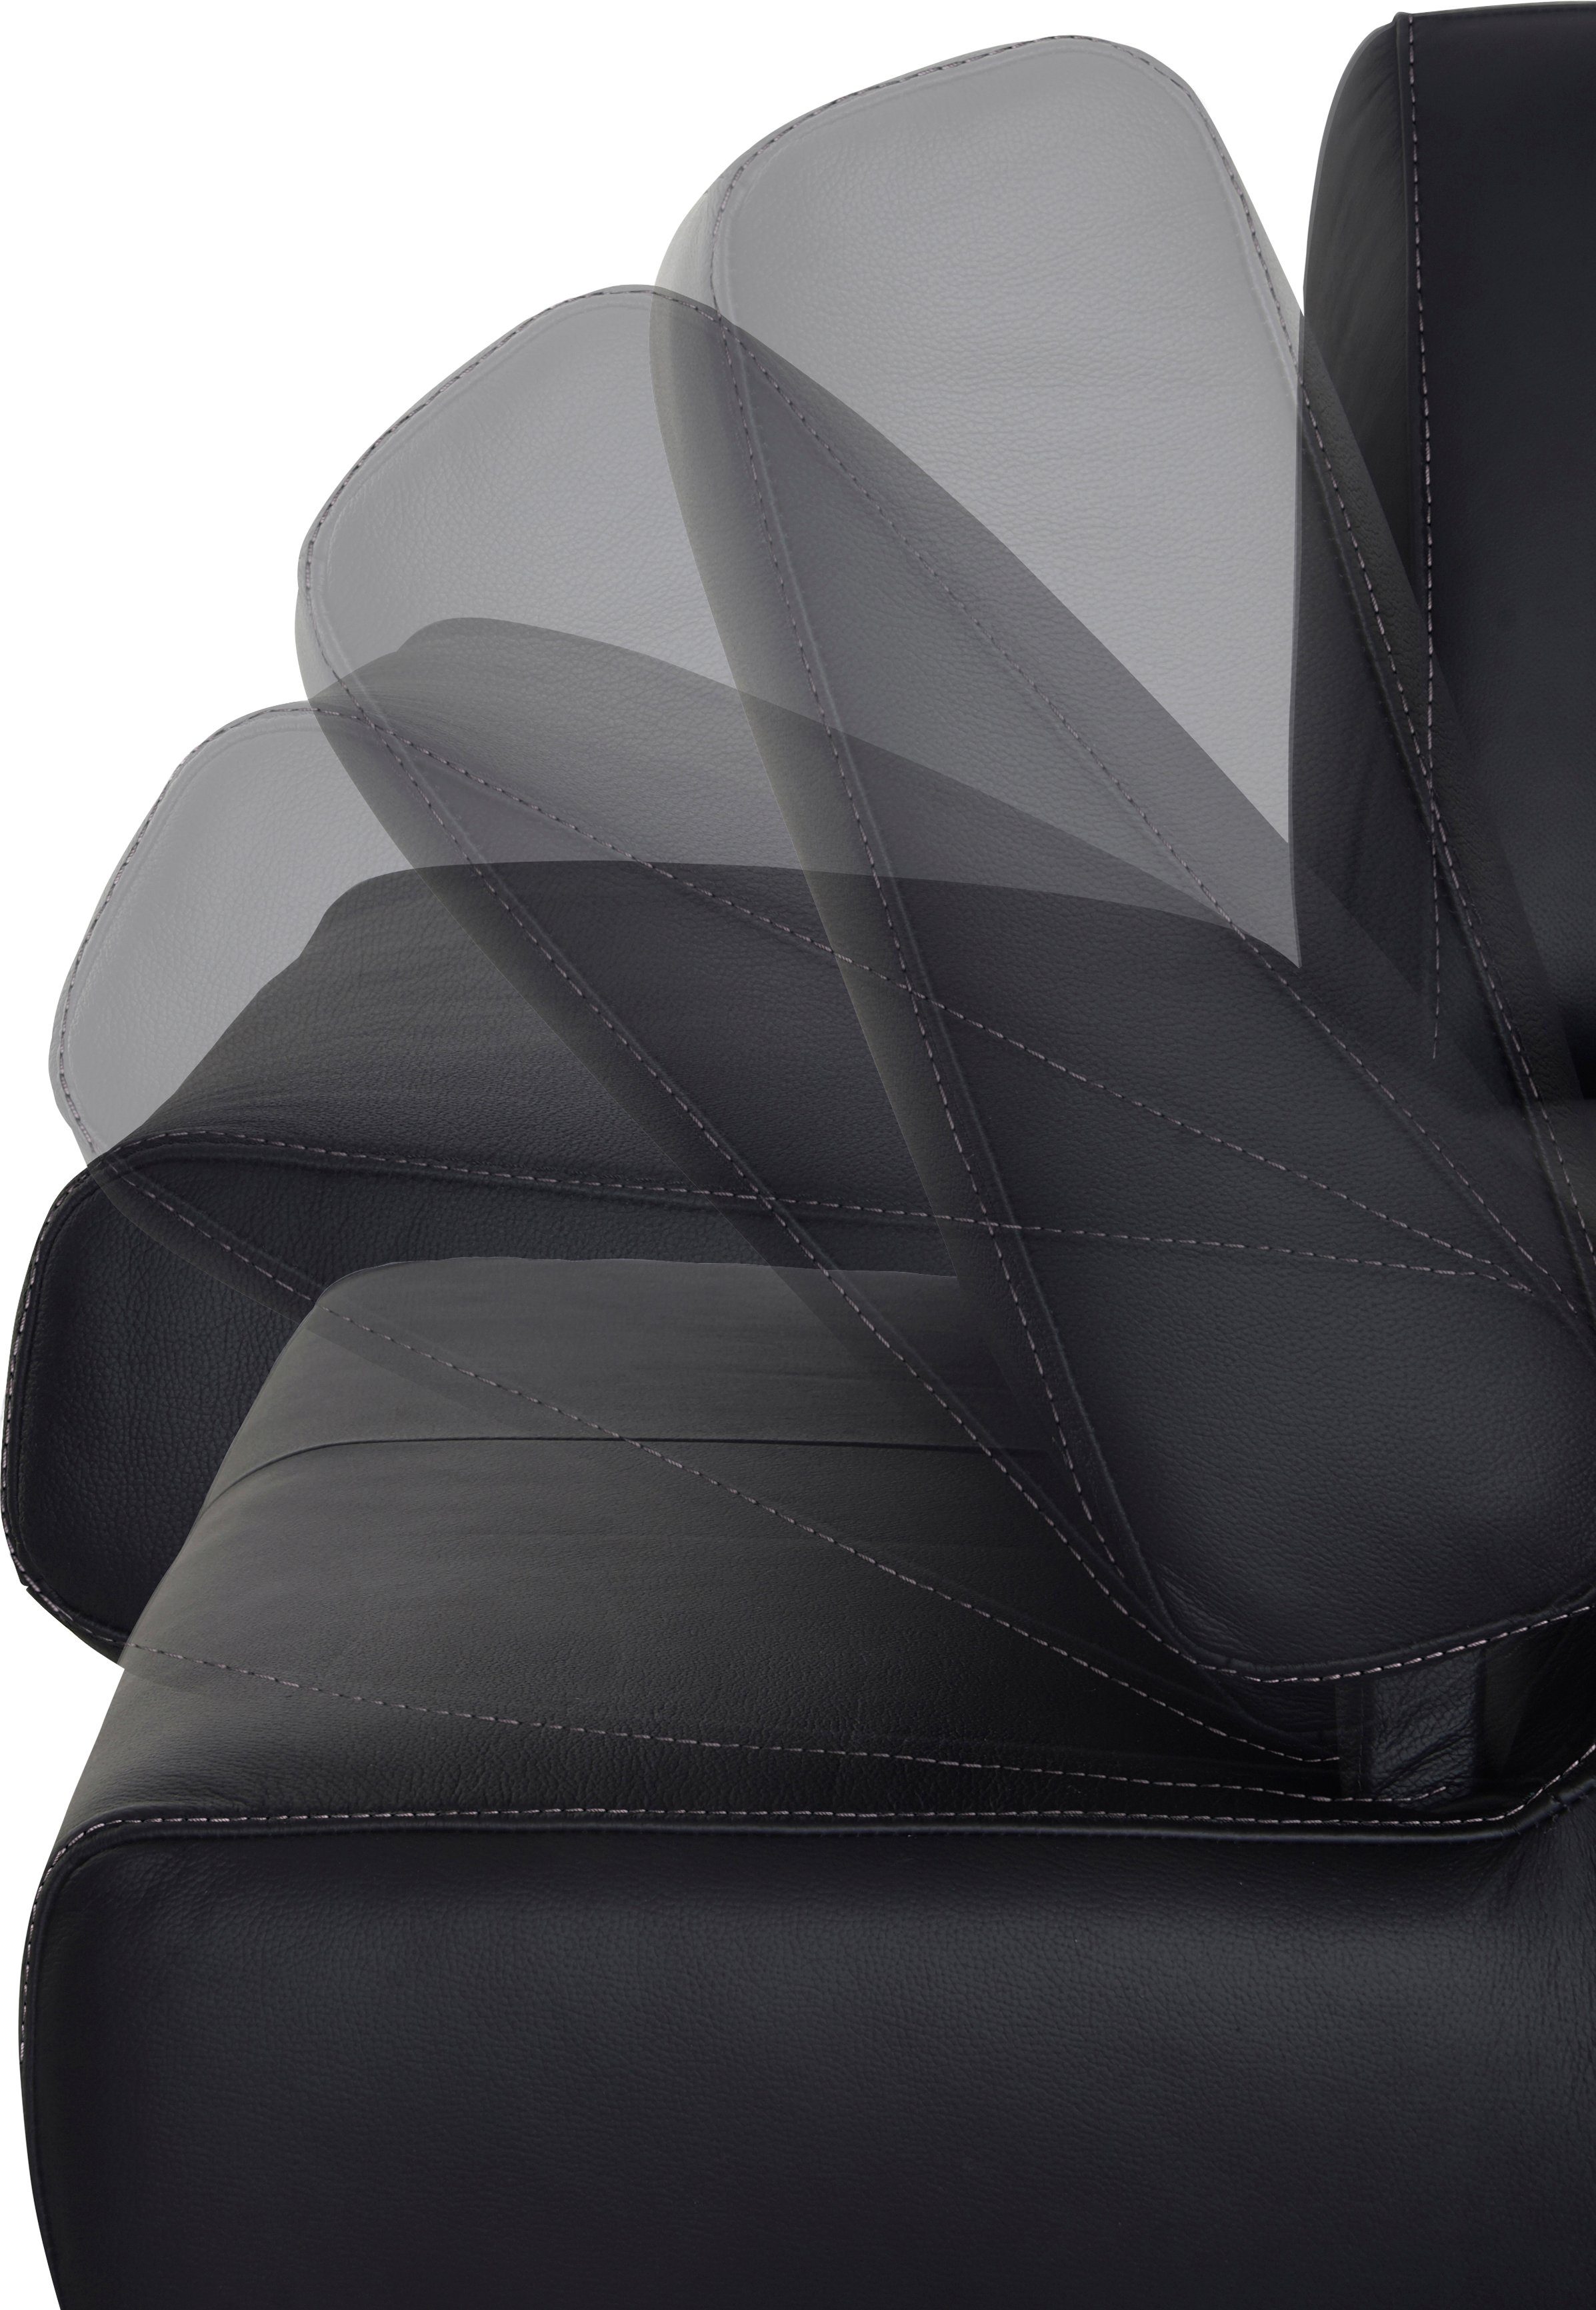 W.SCHILLIG 3-Sitzer taboo, mit Kontrastnaht mit Normaltiefe, weiß inklusive Armlehnenverstellung, Z59